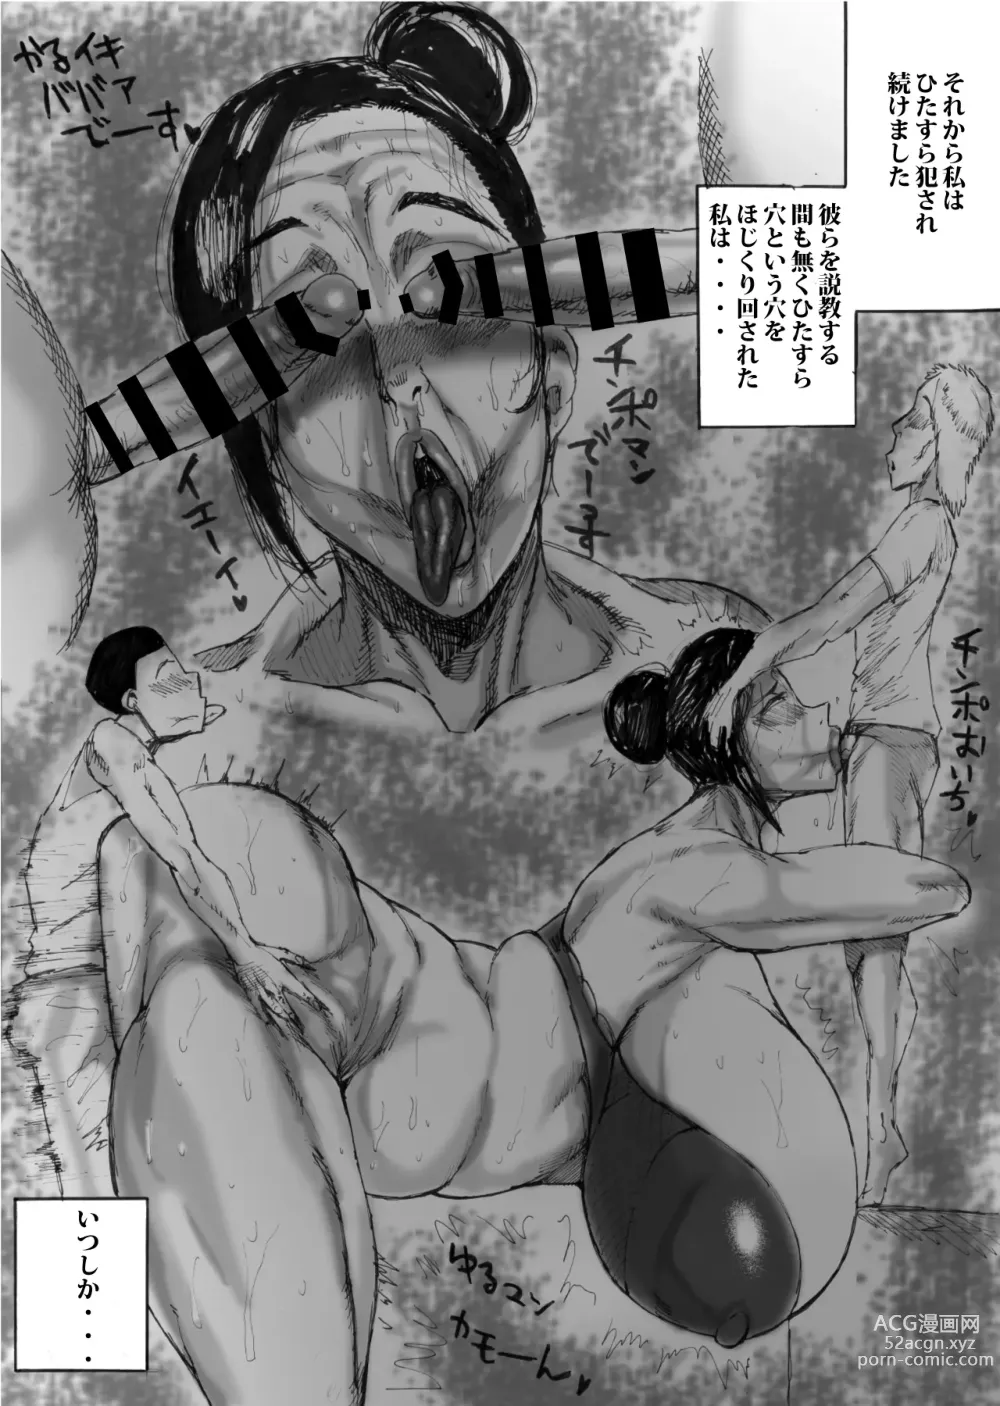 Page 12 of doujinshi ババアのイキ顔(ブス顔)がエロスギた件